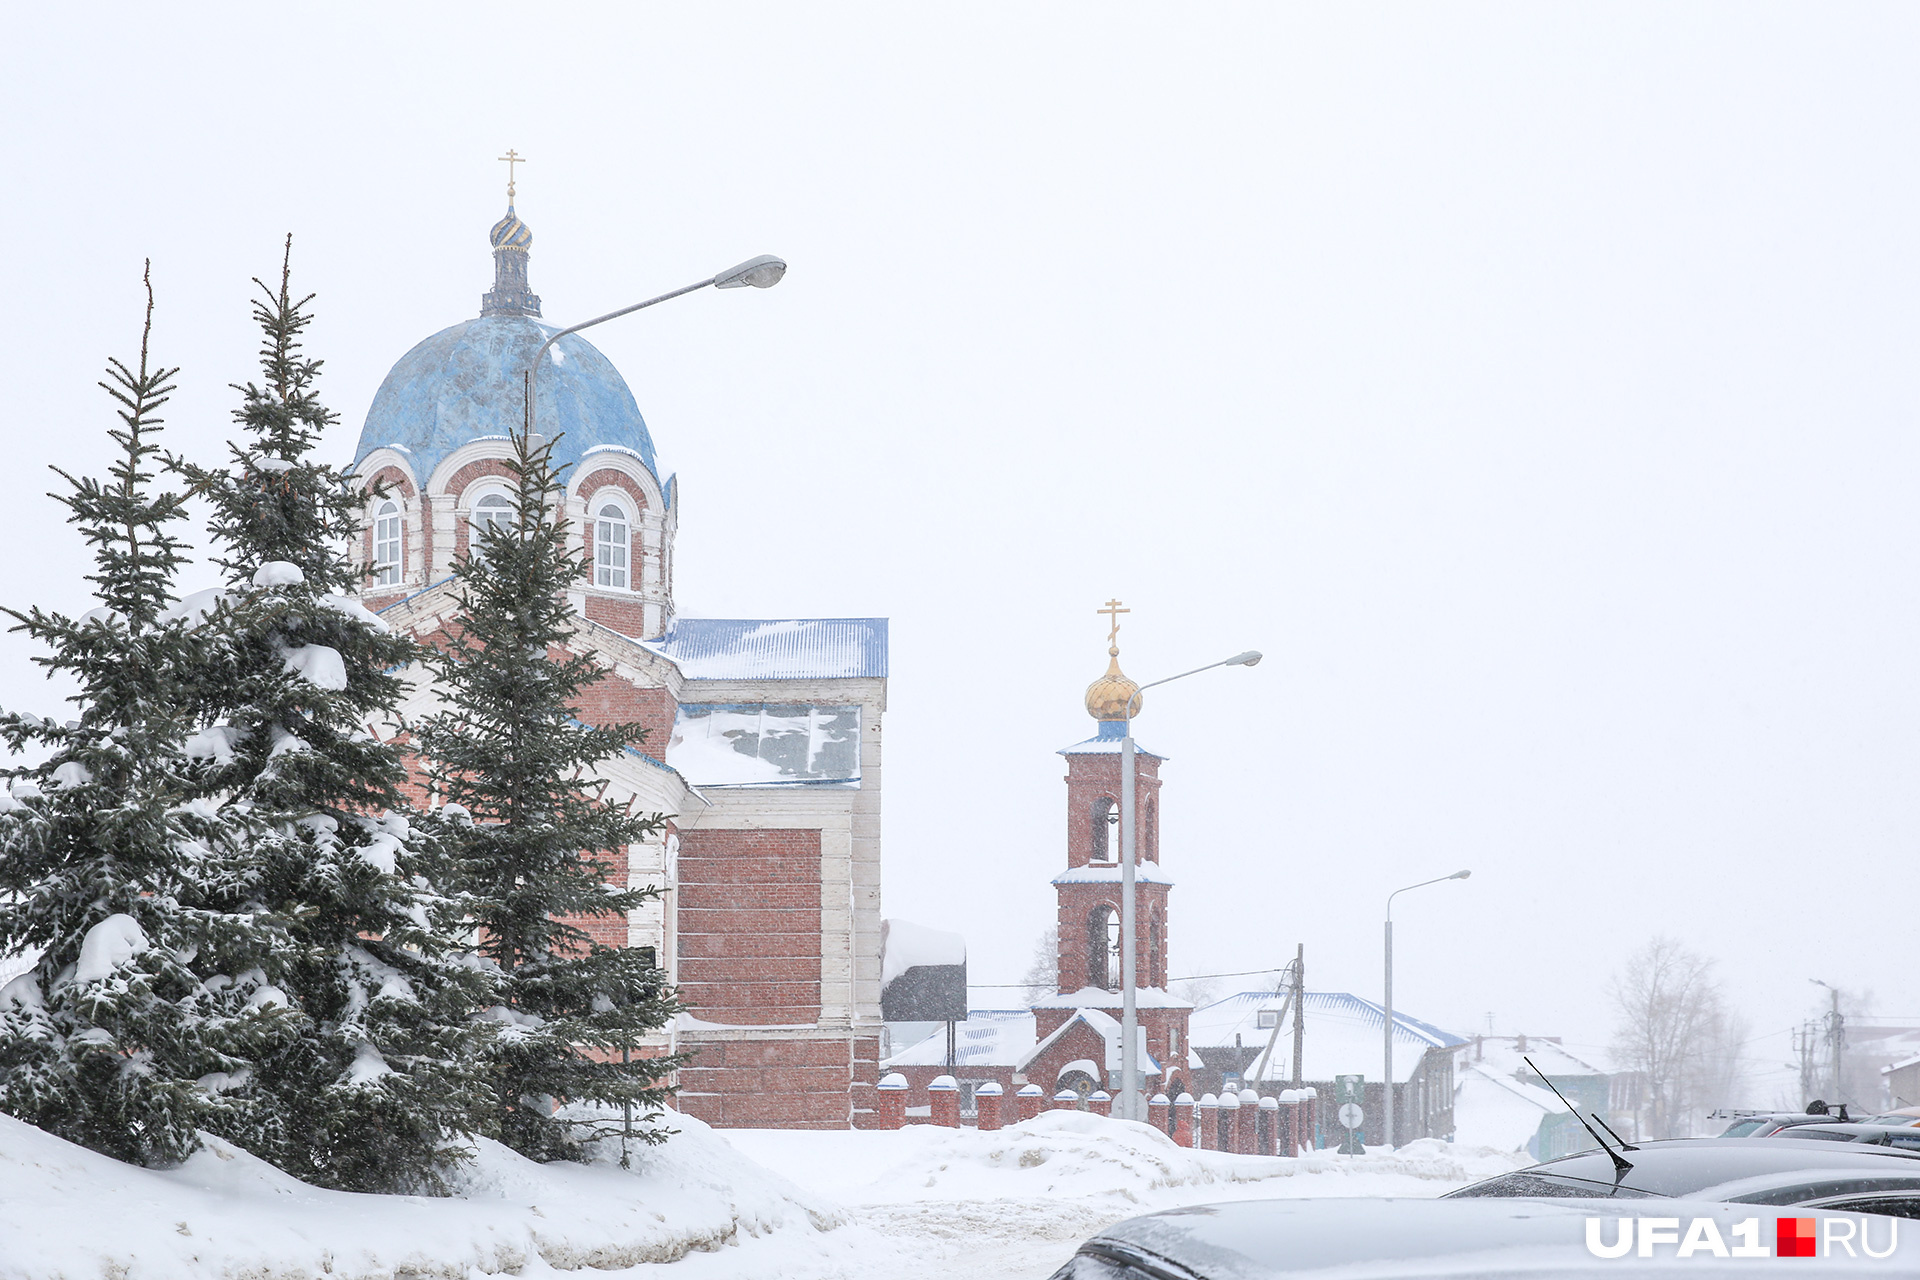 Даже в снежном тумане храм Трех Казанских Святителей прекрасен